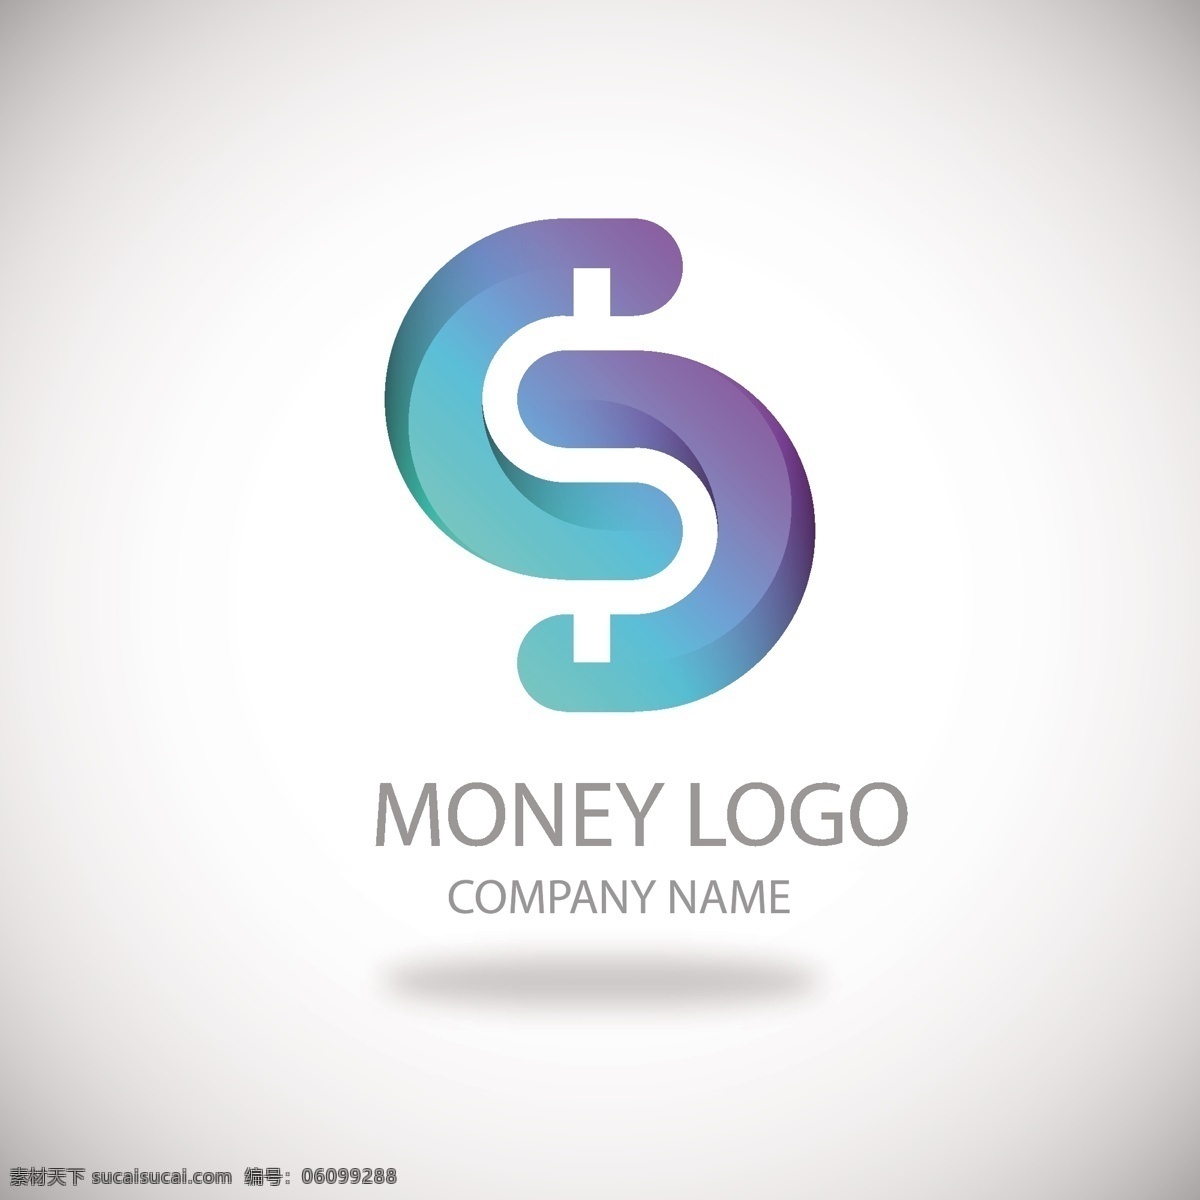 现代 金钱 商标 概念 logo 模板 蓝色 美元符号 logo模板 金钱商标